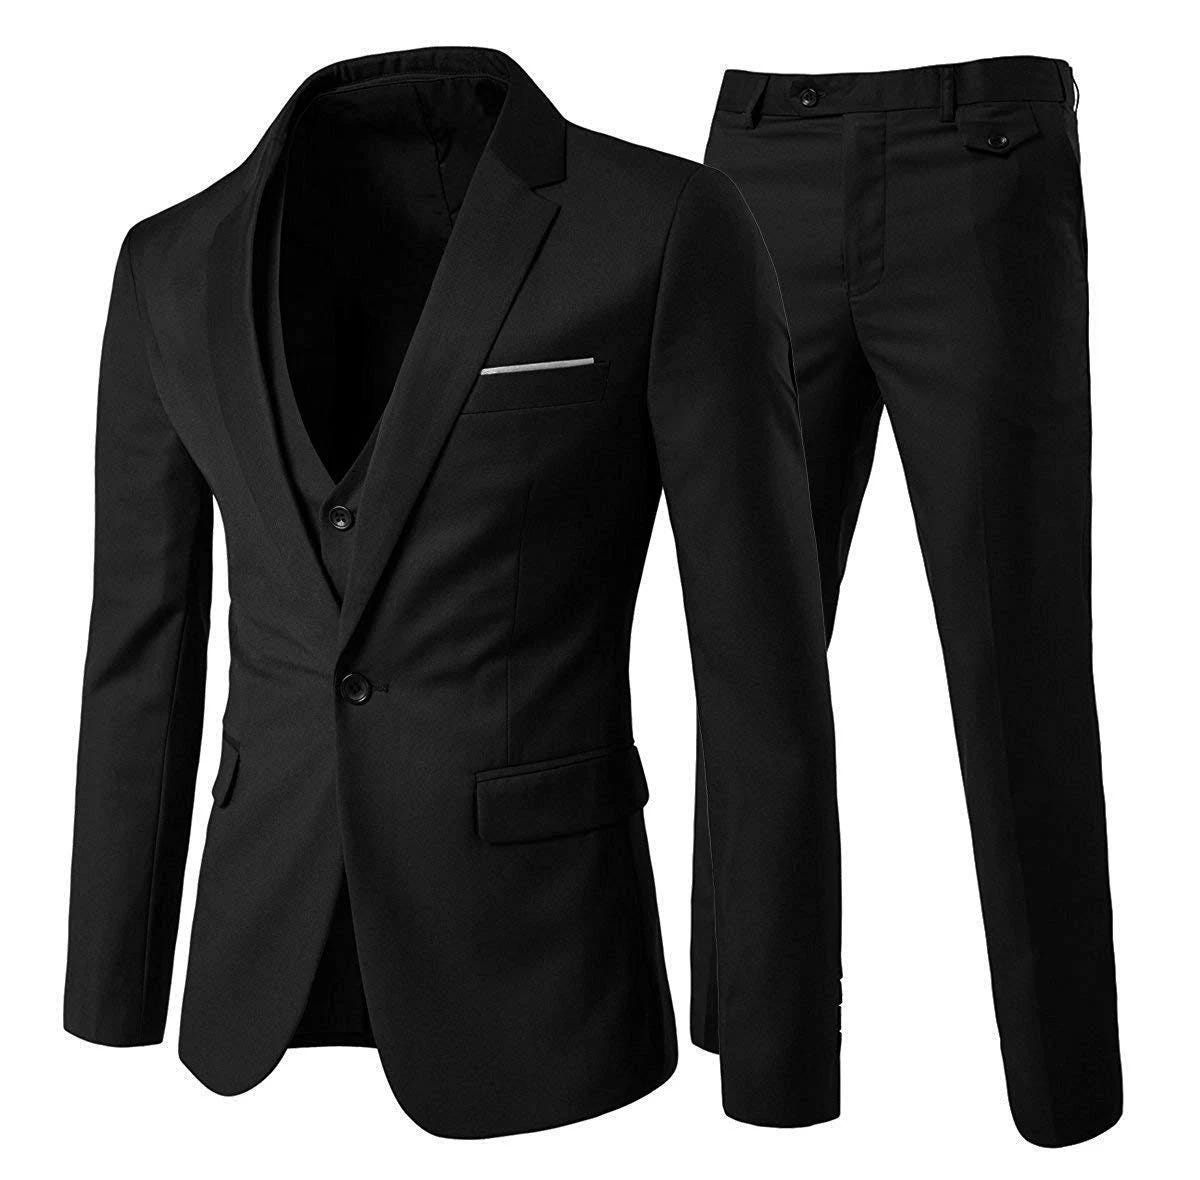 Premium Men's 3-Piece Notch Lapel Suit Set - Perfect for Formal Occasions | Image